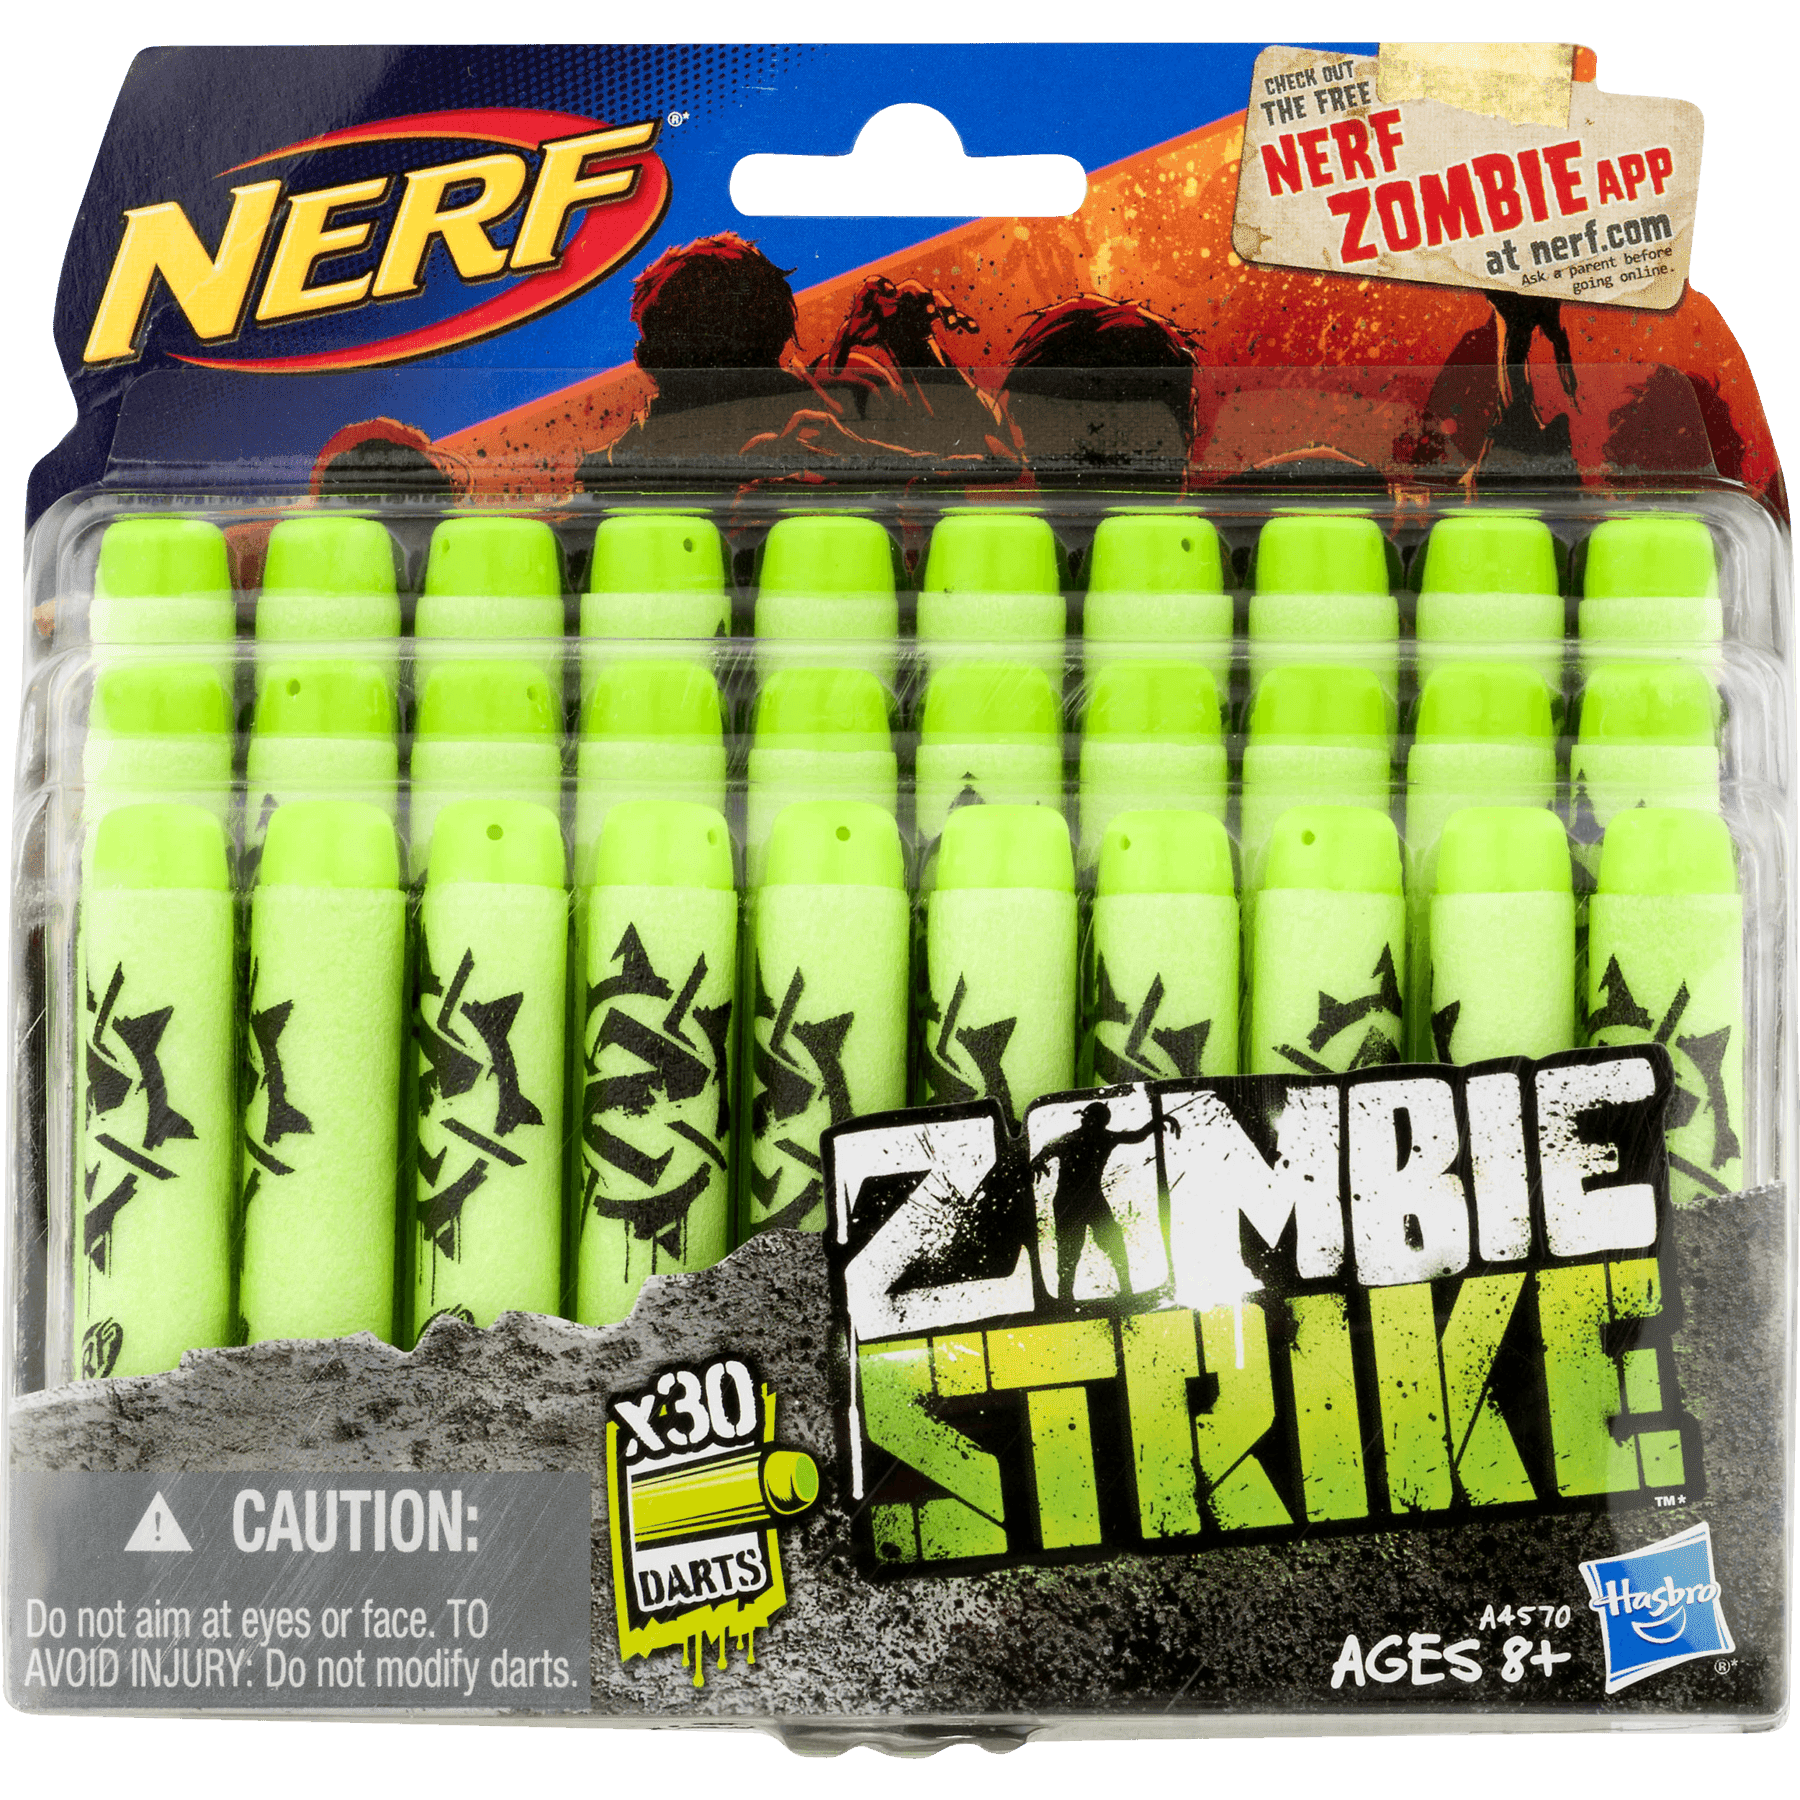 Nerf Zombie Ripshot and Ricochet bundle with Bonus Dart Pack - Walmart.com